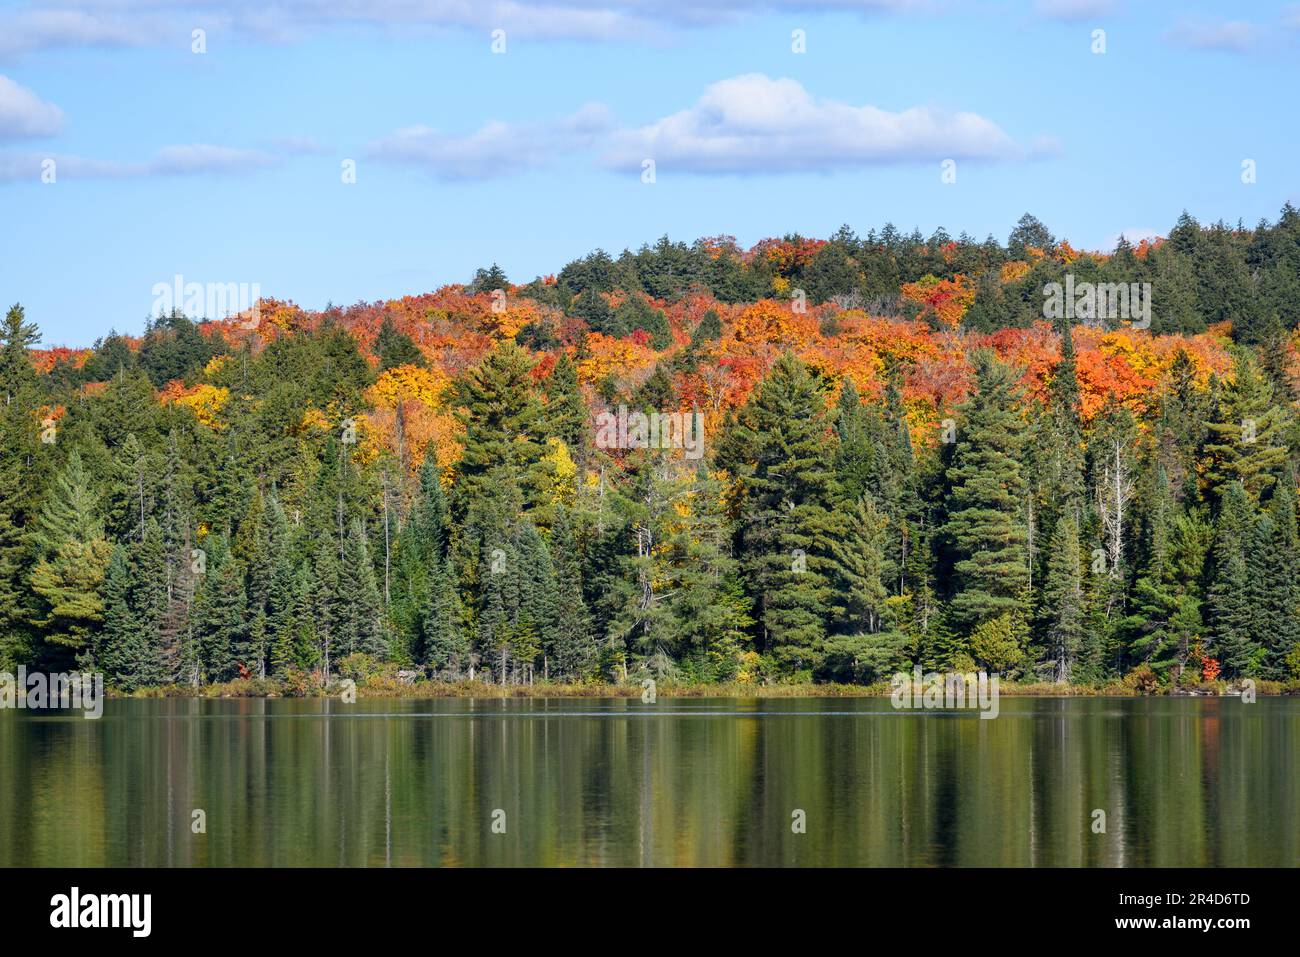 Farbenfrohe Laubbäume auf dem Gipfel der Herbstlaub zwischen immergrünen Bäumen am Ufer eines Sees an einem sonnigen Herbsttag. Reflexion im Wasser. Stockfoto